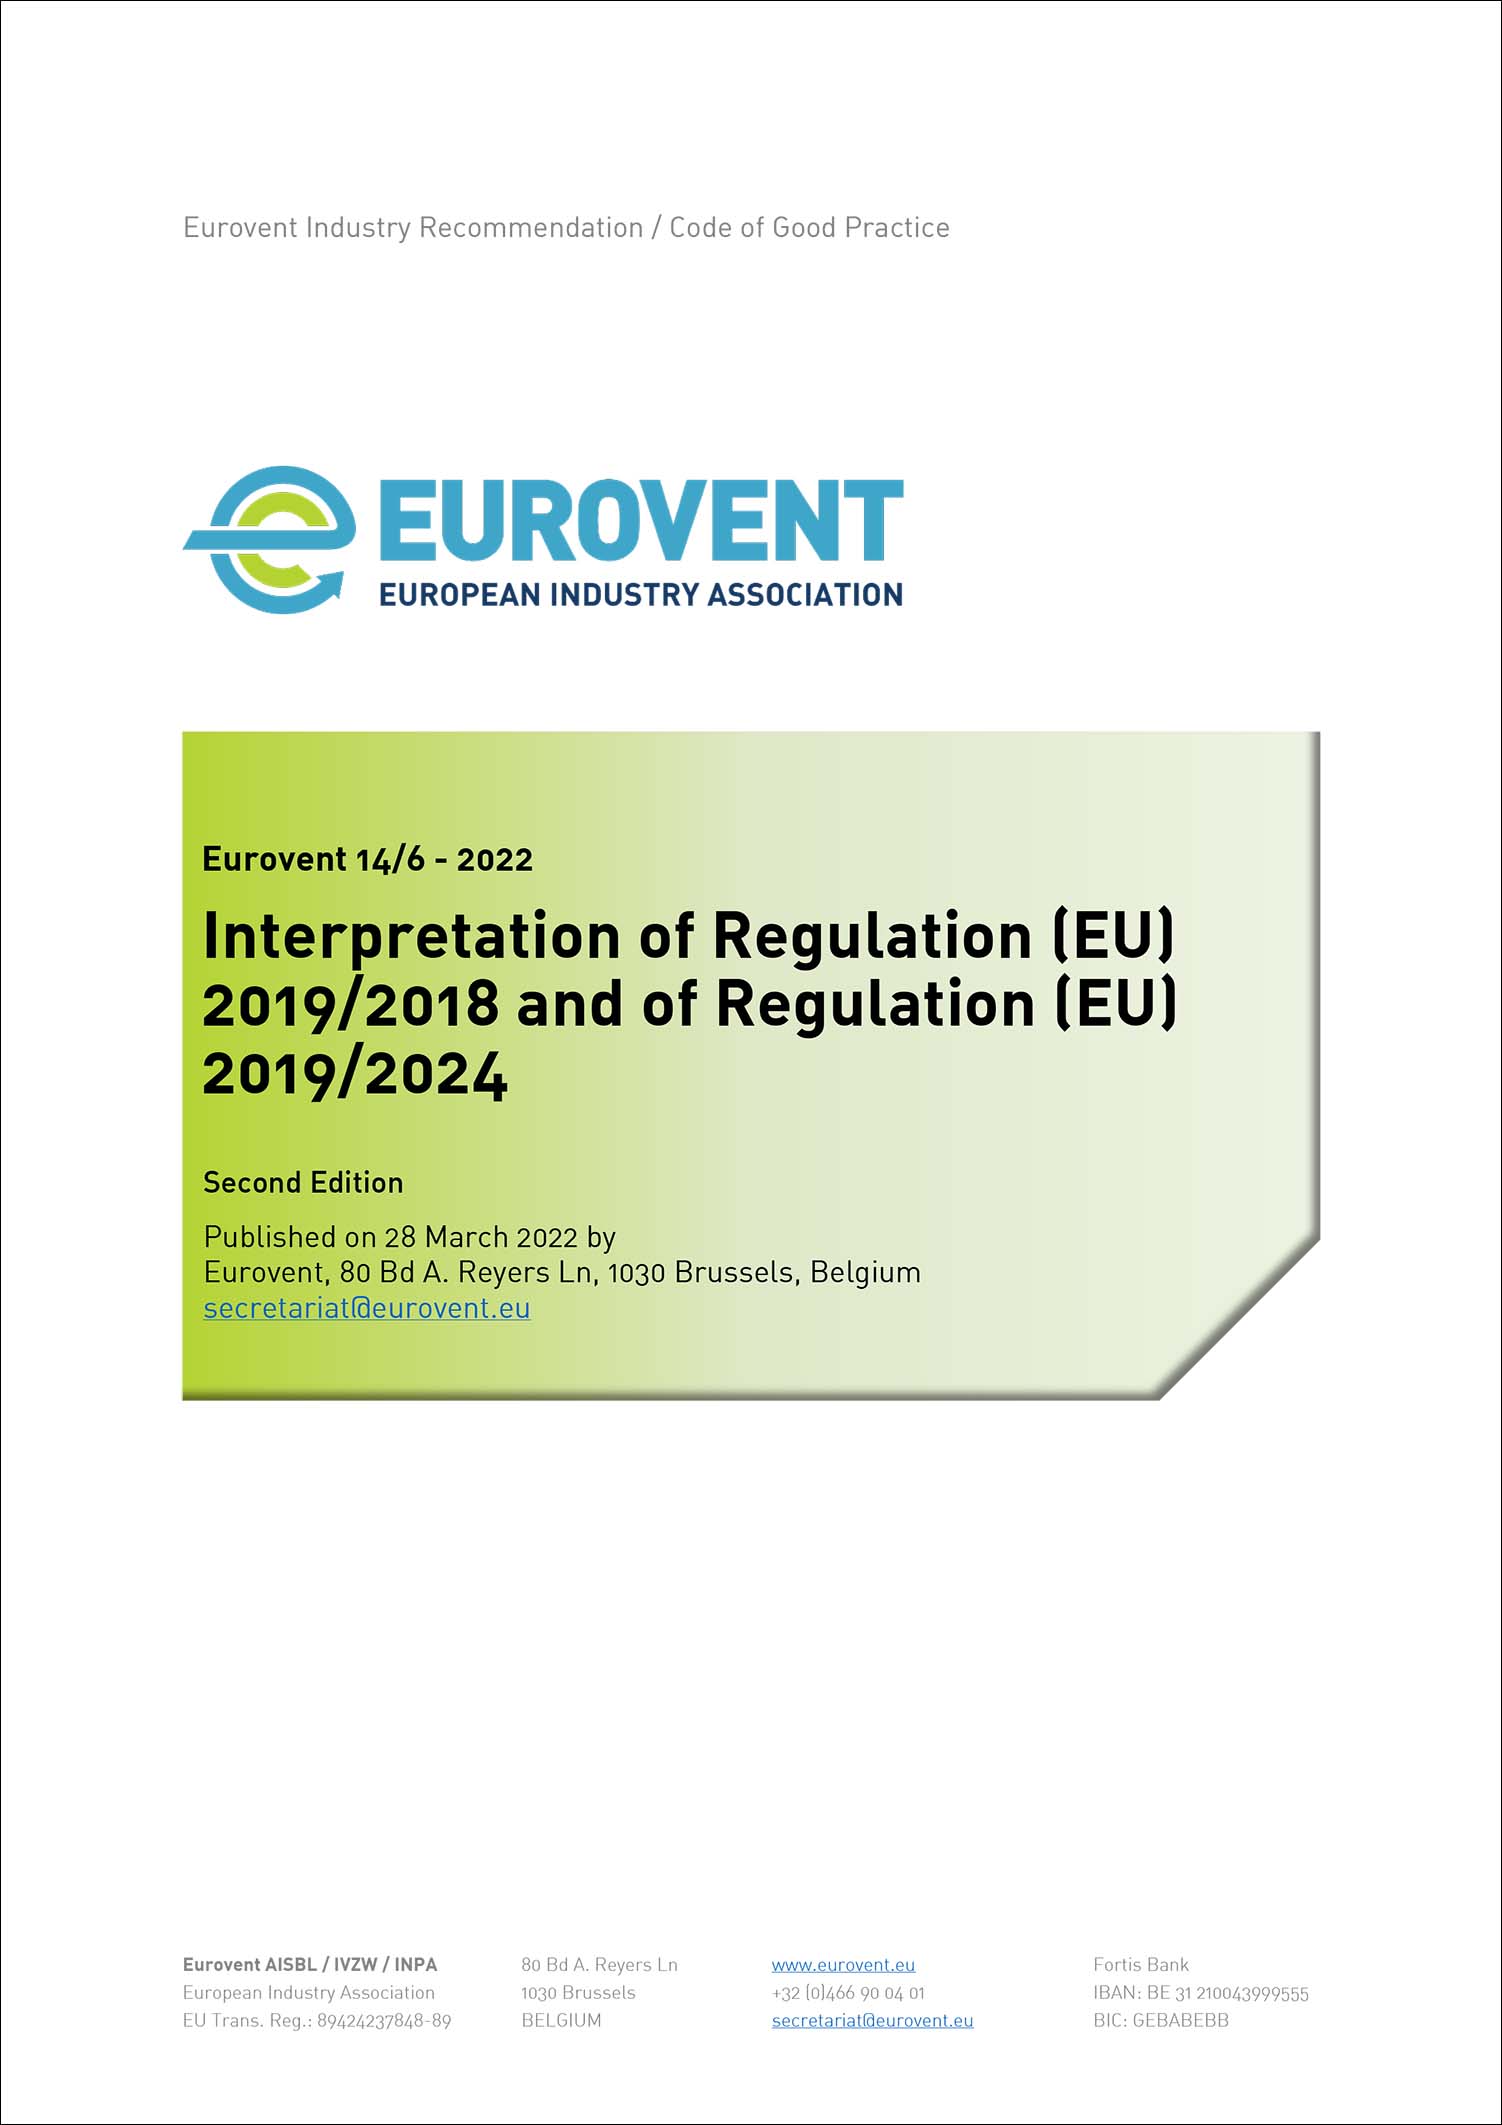 Eurovent 14/6 - 2022: Interpretation of Regulation (EU) 2019/2018 and of Regulation (EU) 2019/2024